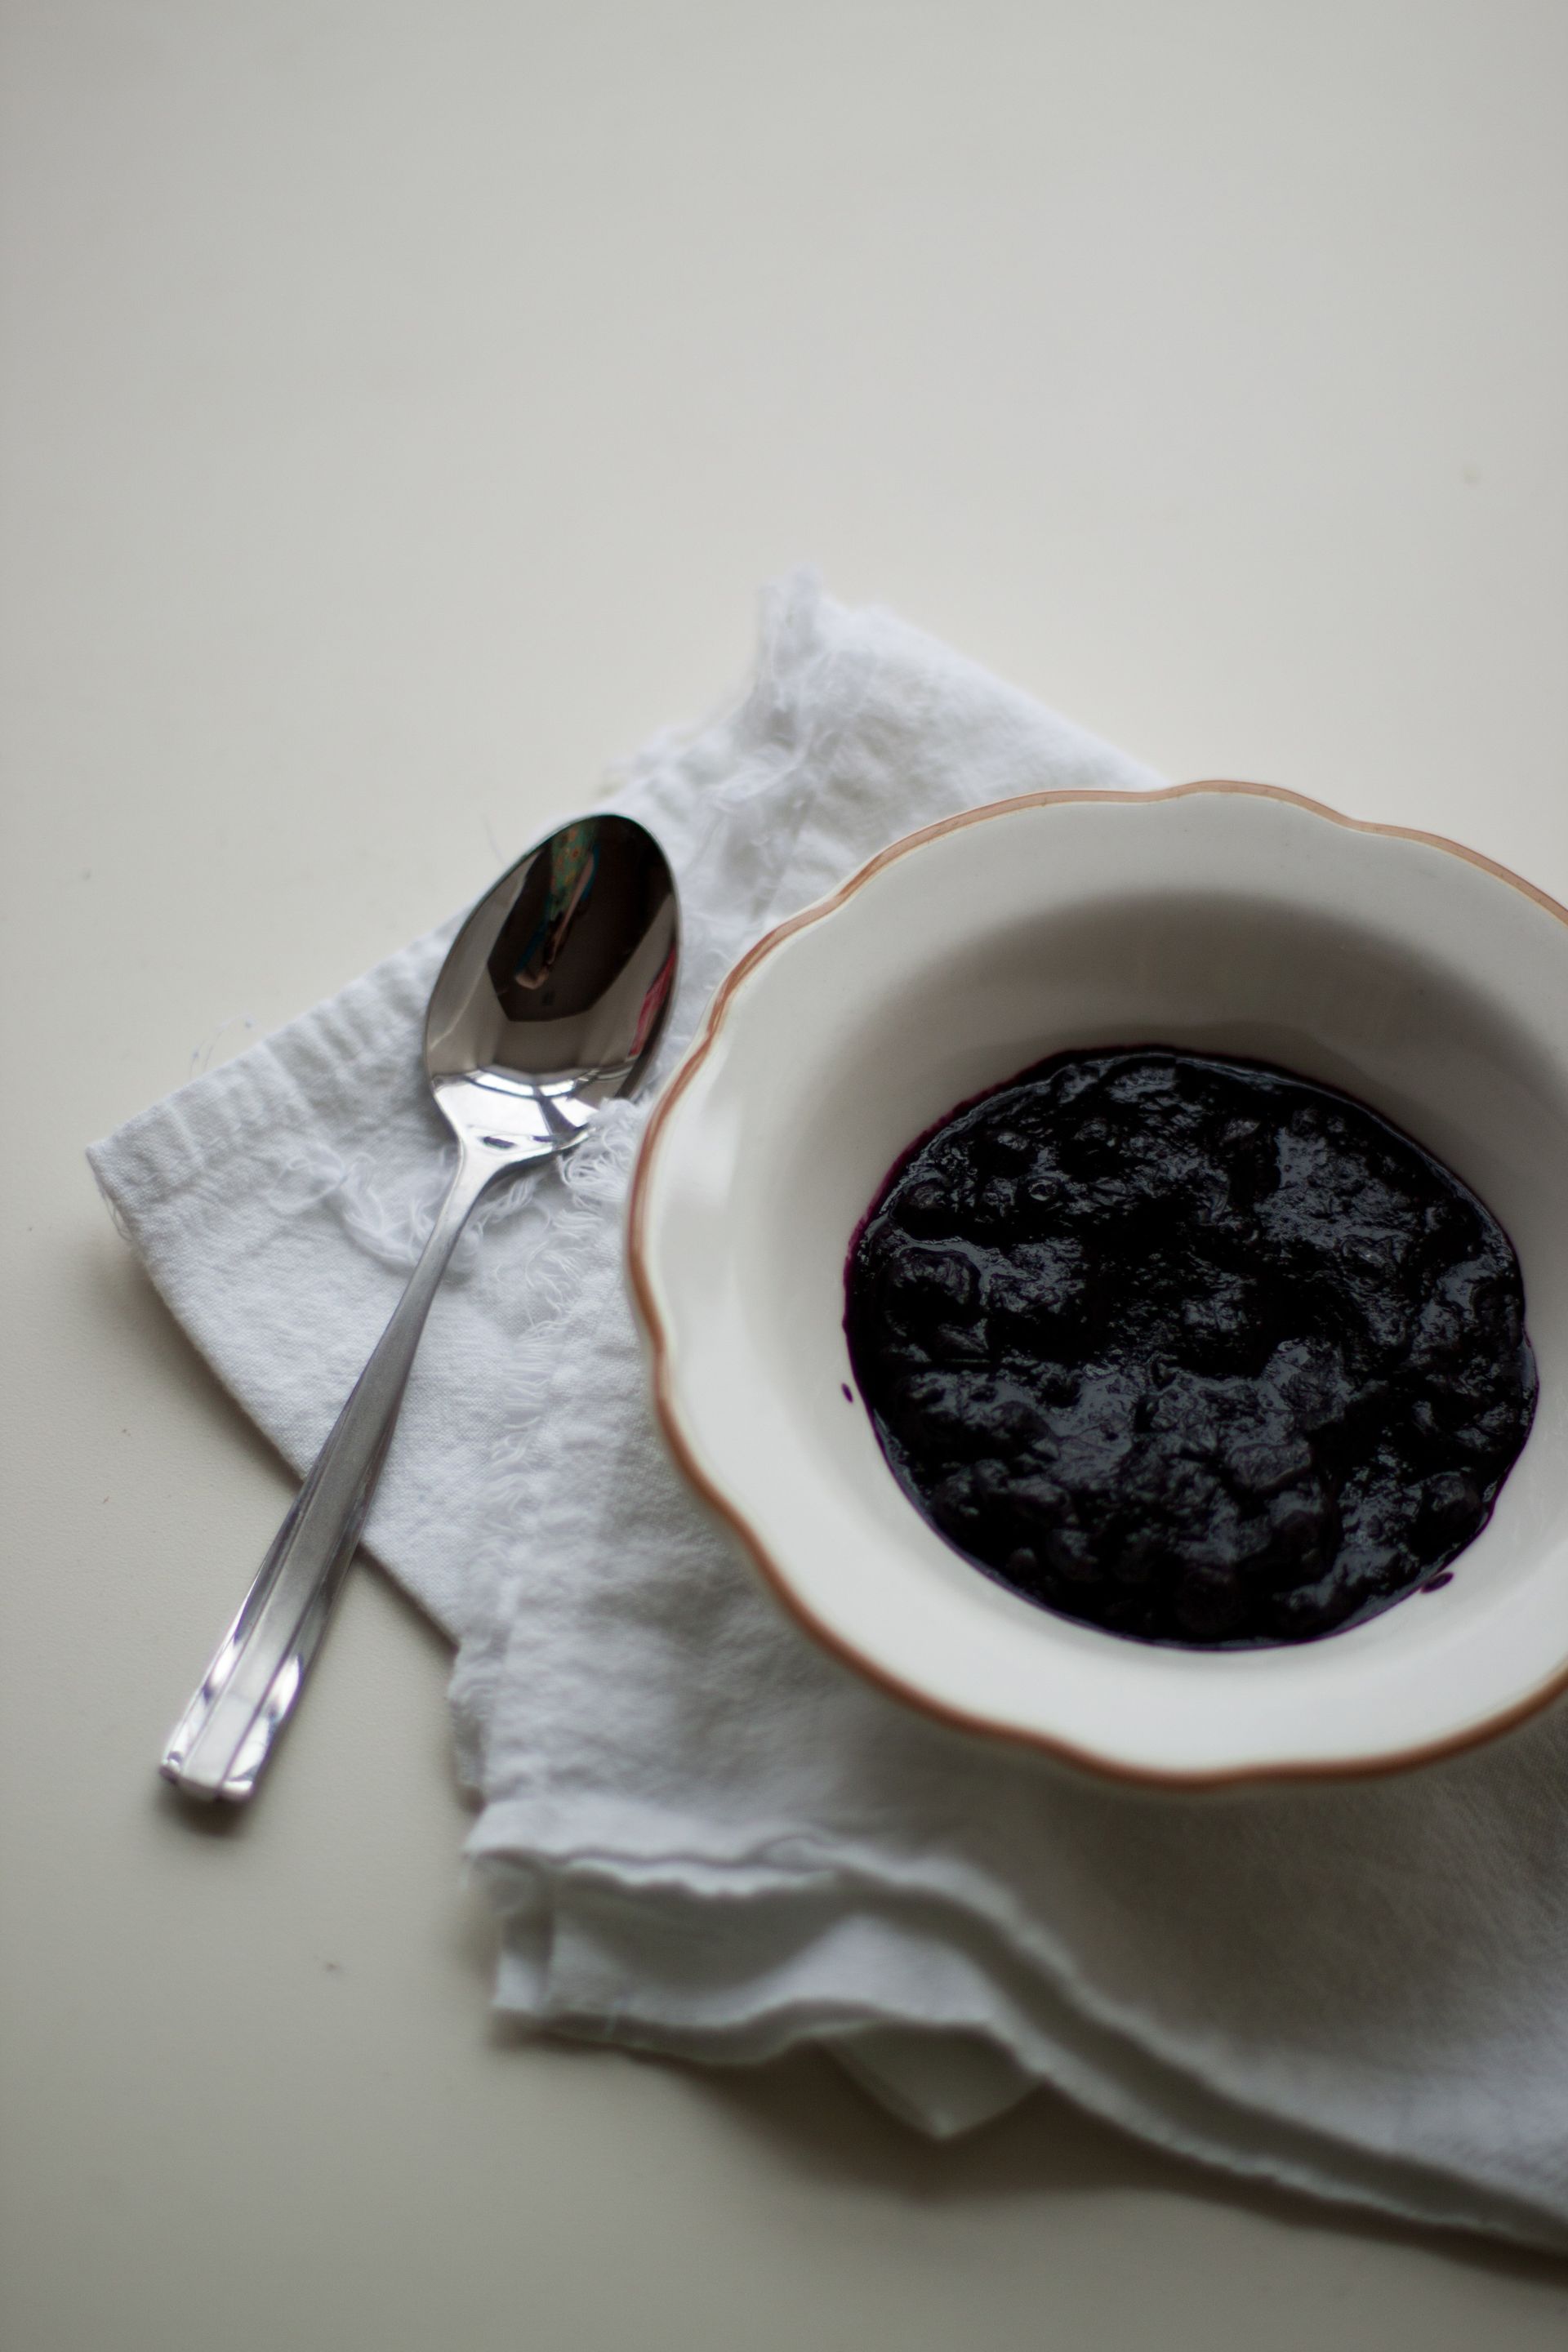 A bowl of dark jam.